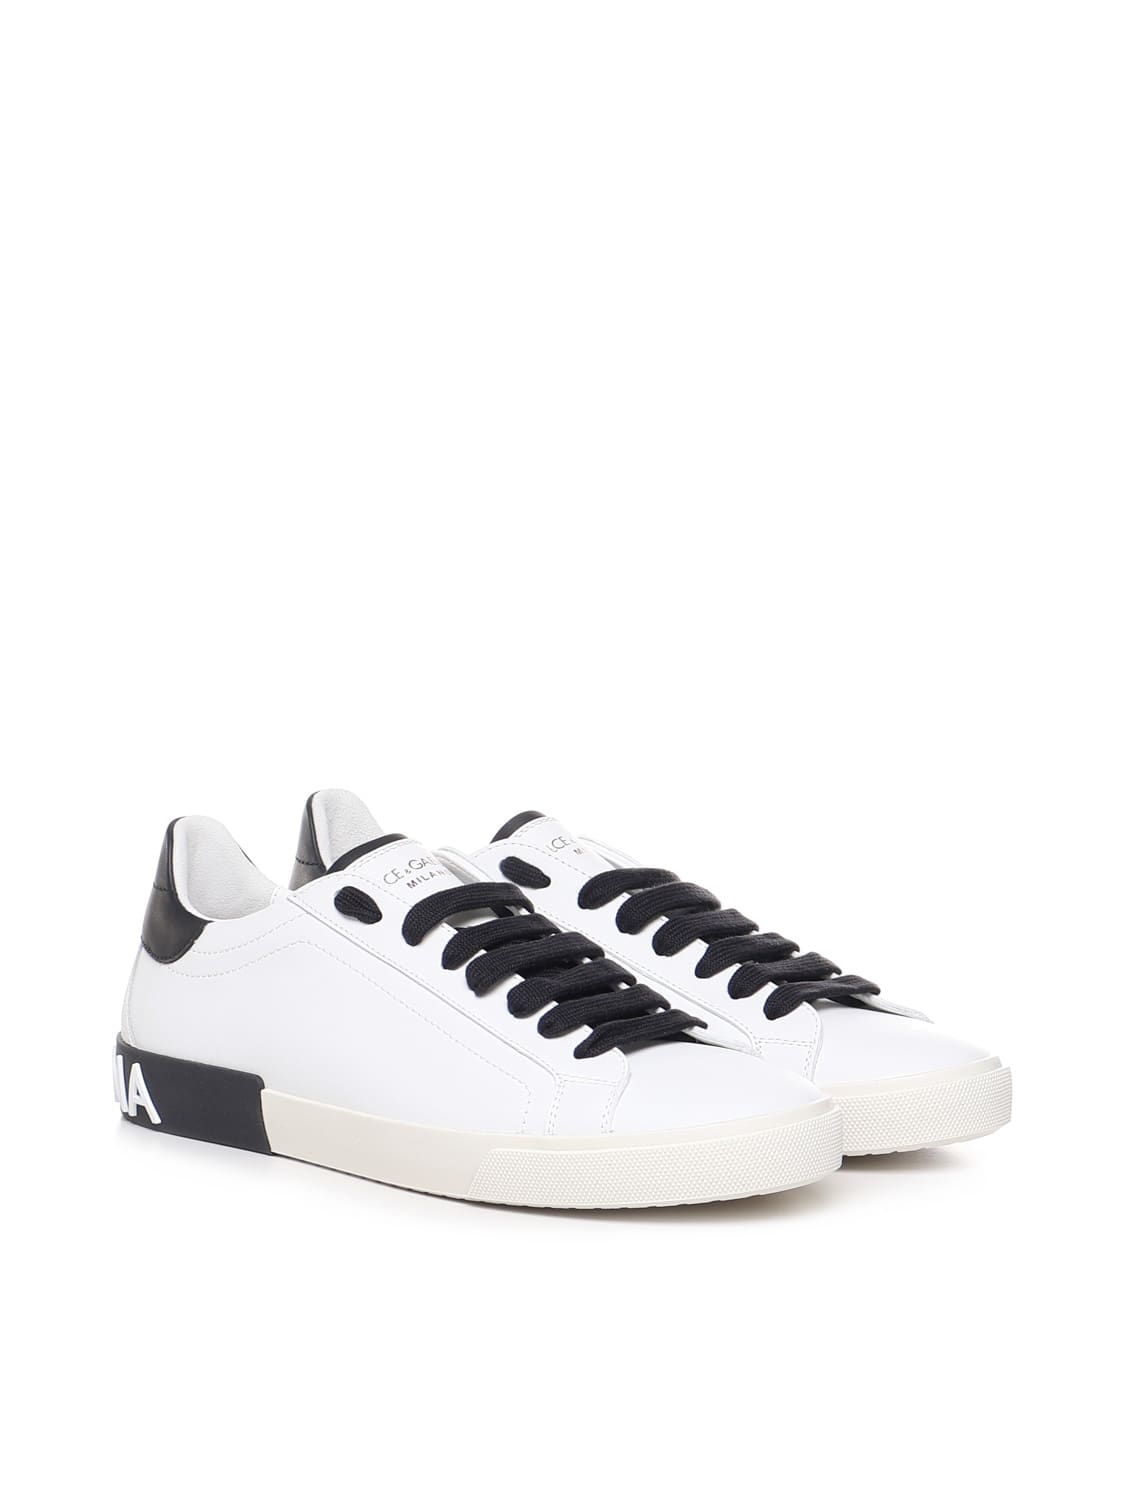 & Gabbana Portofino Sneakers In Leather In White | ModeSens